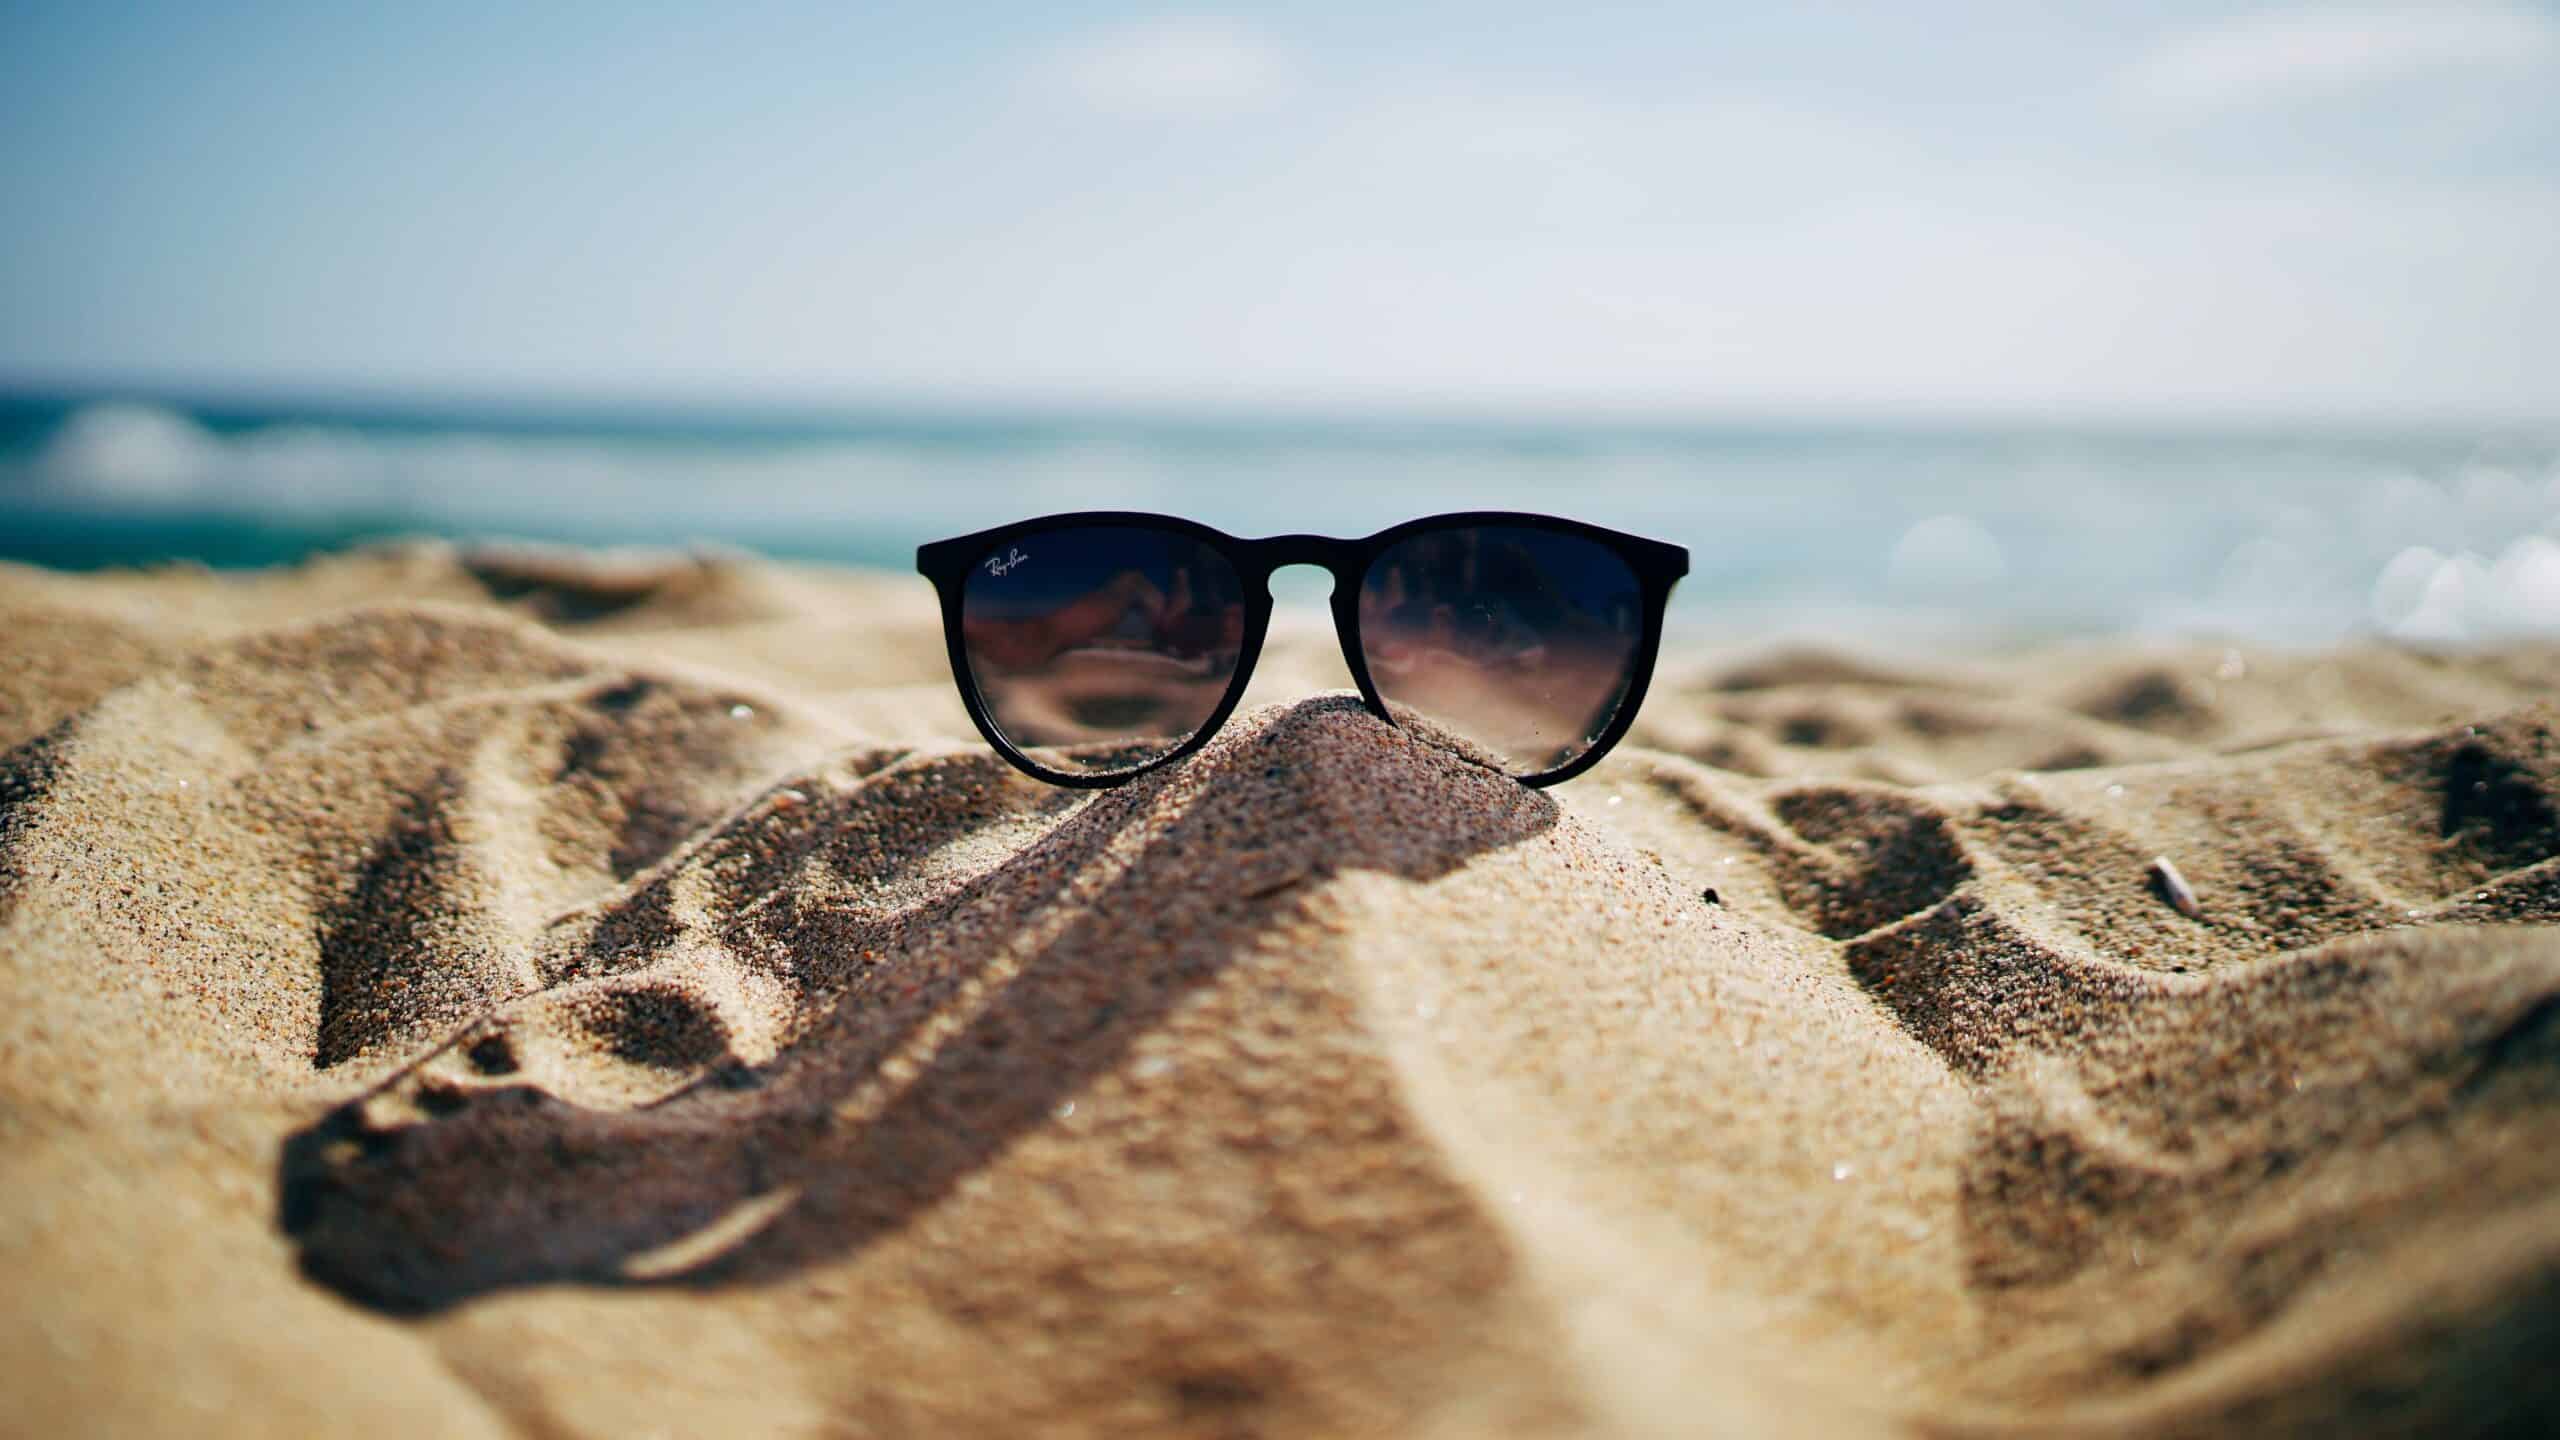 Sunglasses on a beach.